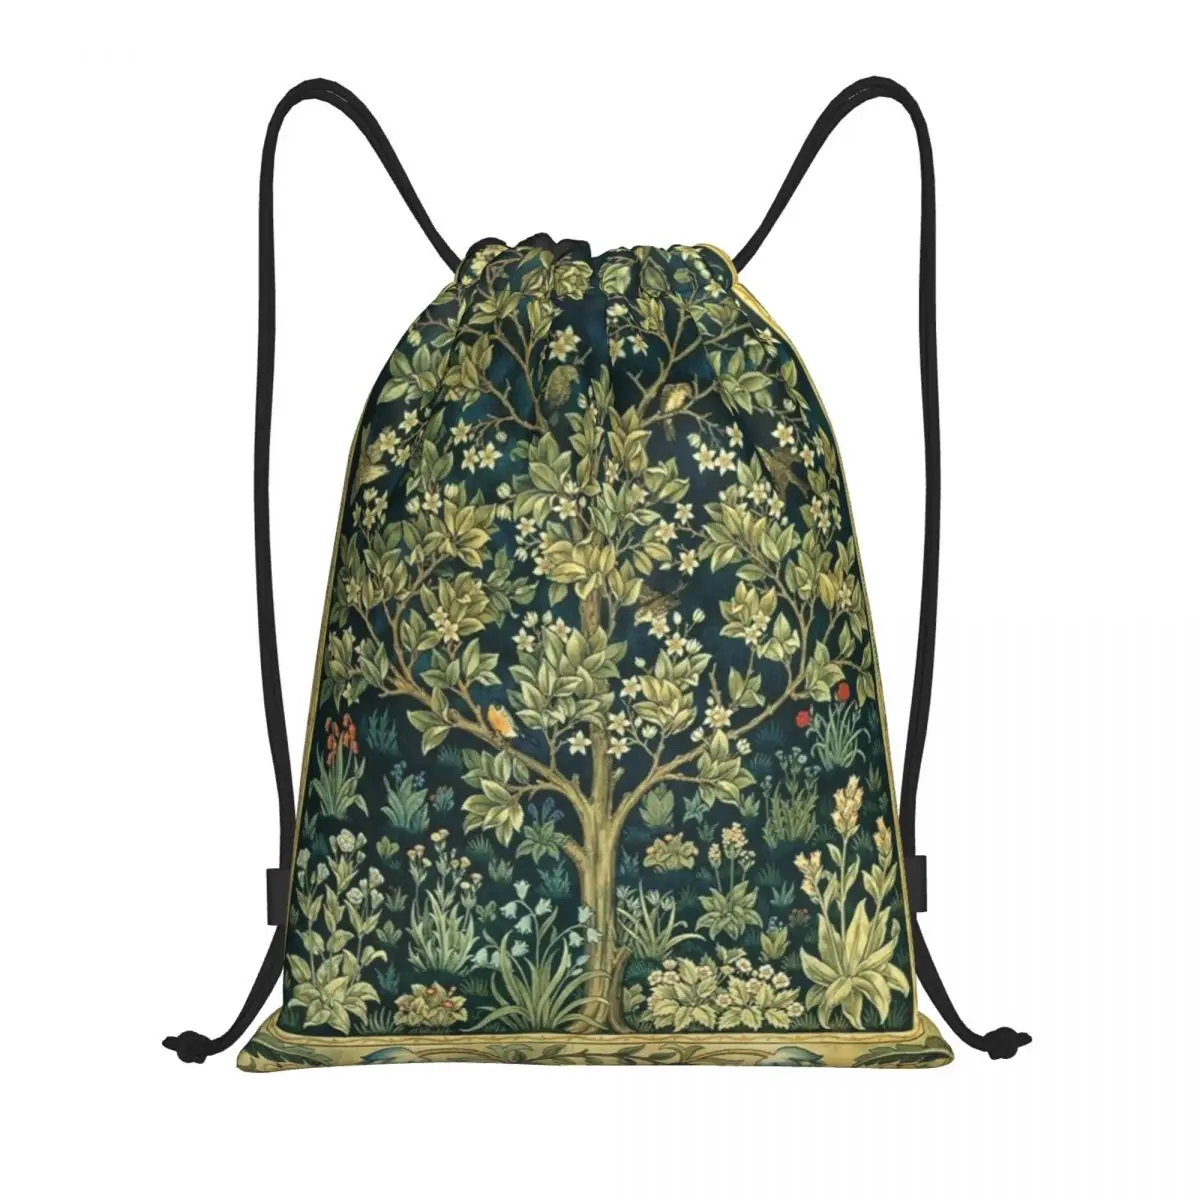 Рюкзак Tree Of Life от William Morris на шнурке, спортивная спортивная сумка для женщин и мужчин, сумка для покупок с цветочным текстильным рисунком